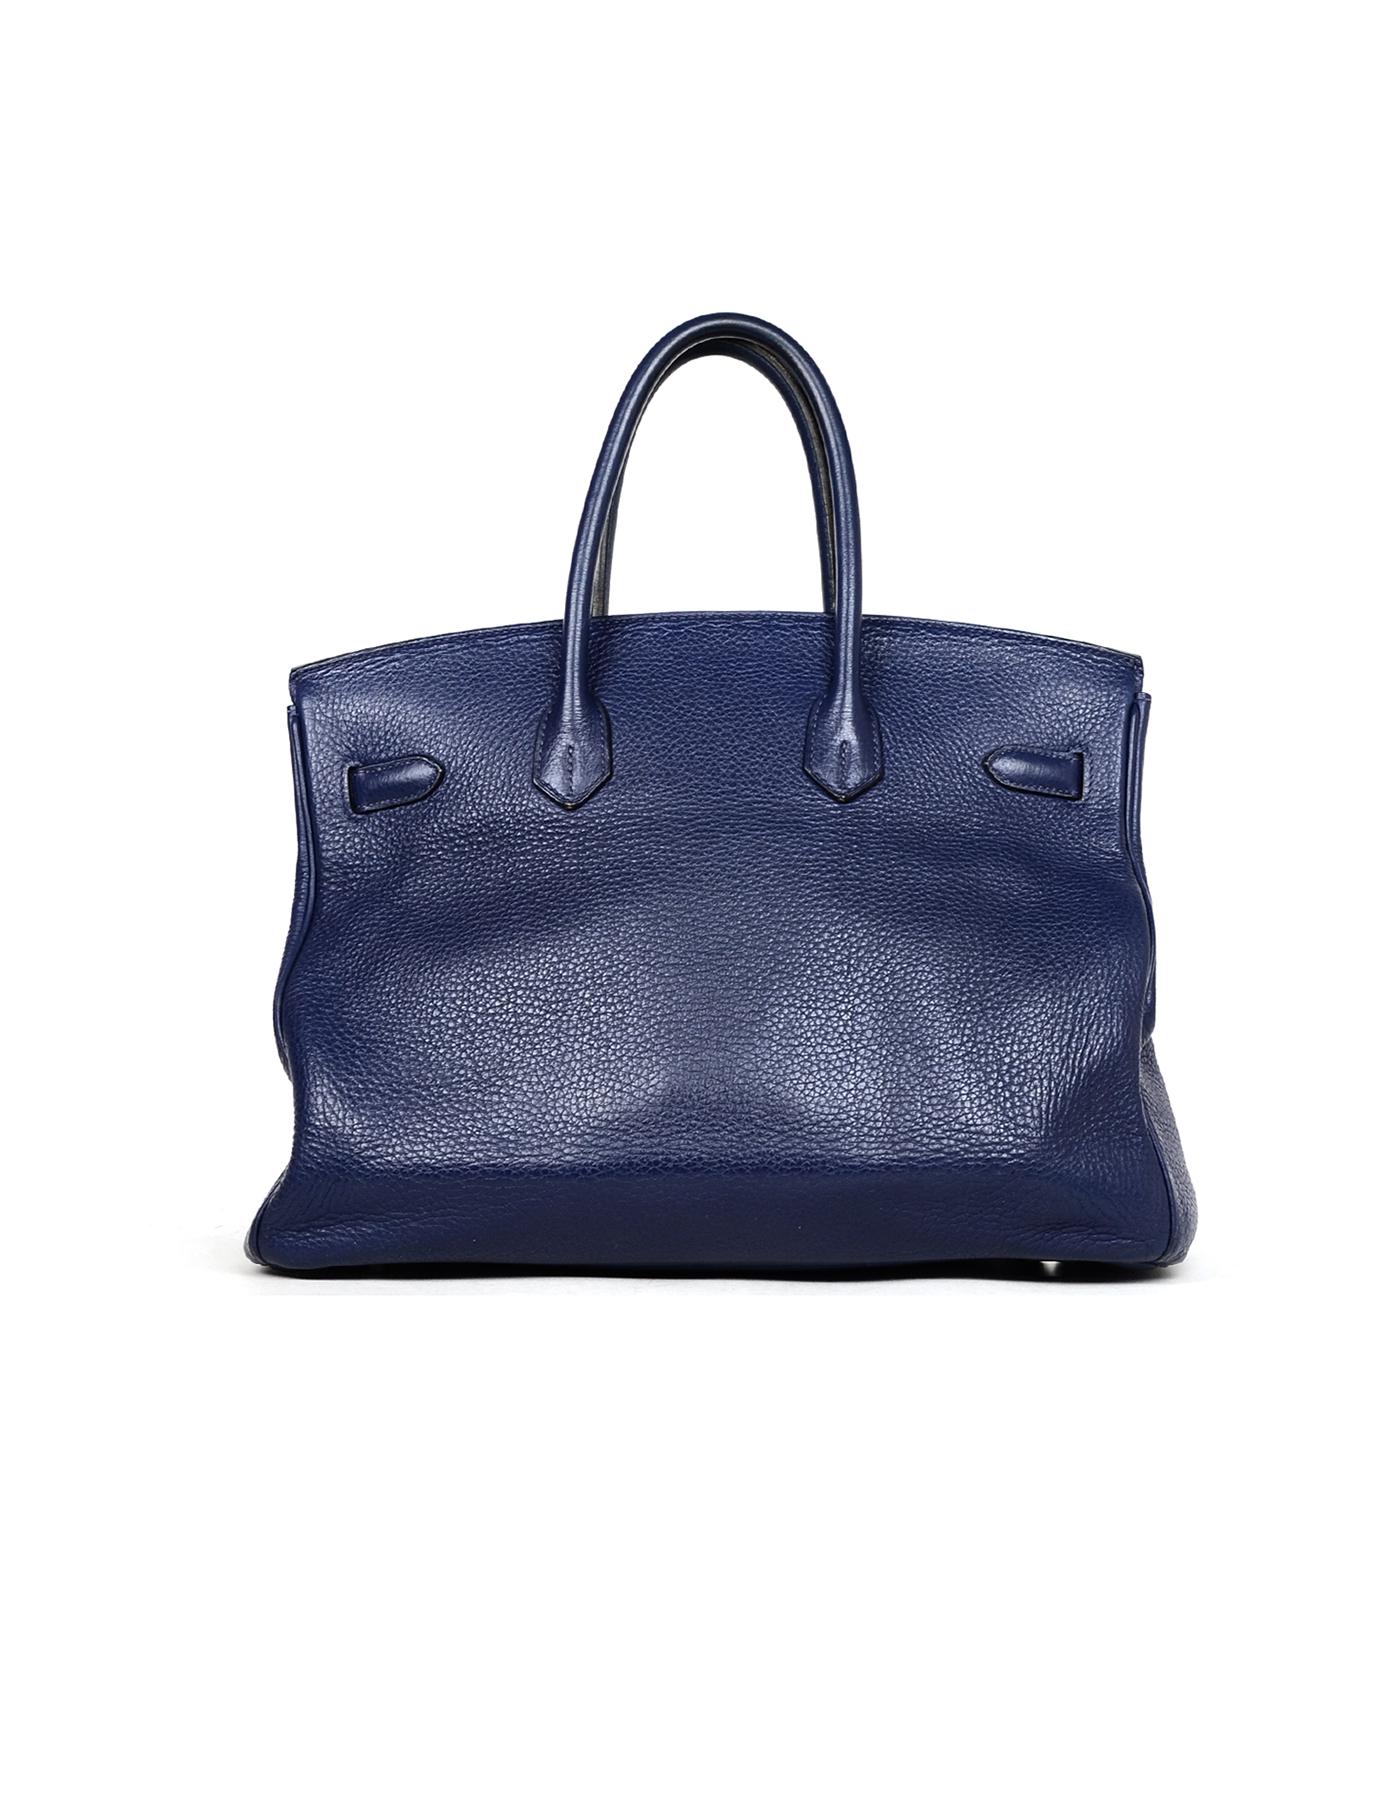 Hermes '10 Bleu De Malte Togo Leather 35cm Birkin Bag W/ Palladium Hardware (Violett)